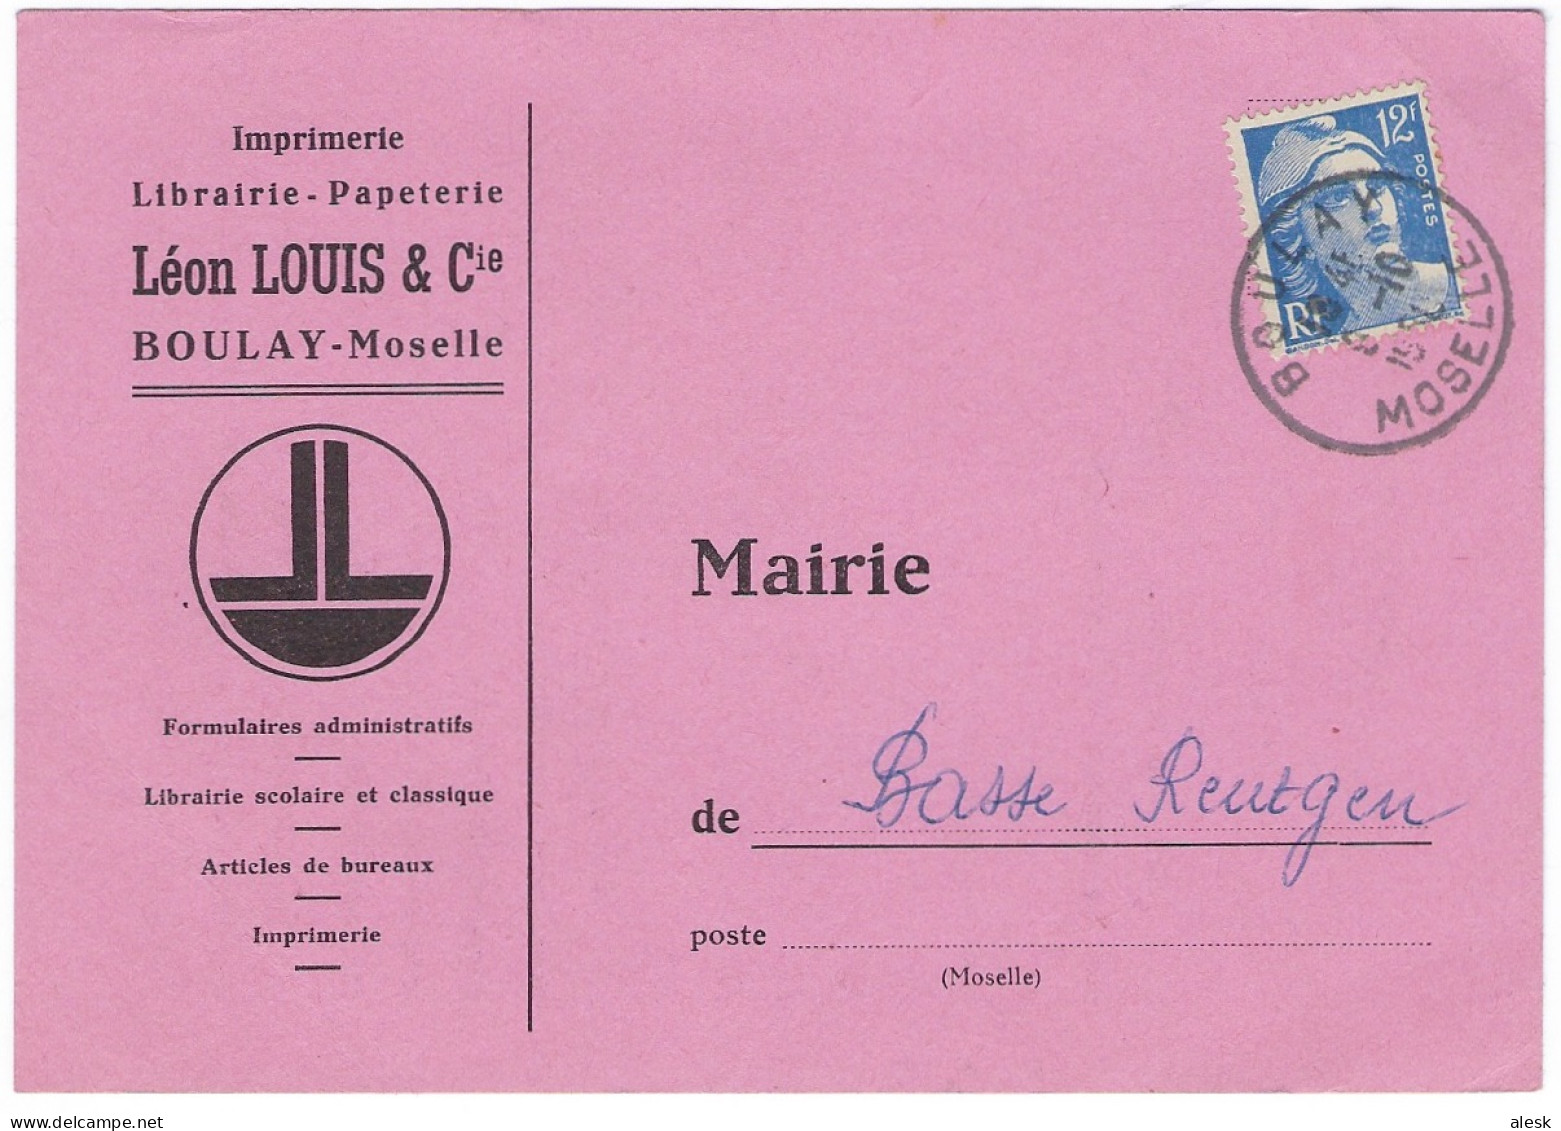 TARIF 6 Janvier 1949 Carte-Postale - Boulay 8 Octobre 1950 Gandon N°812 Pour Basse-Rentgen - Peut-être Demi Daguin - Postal Rates